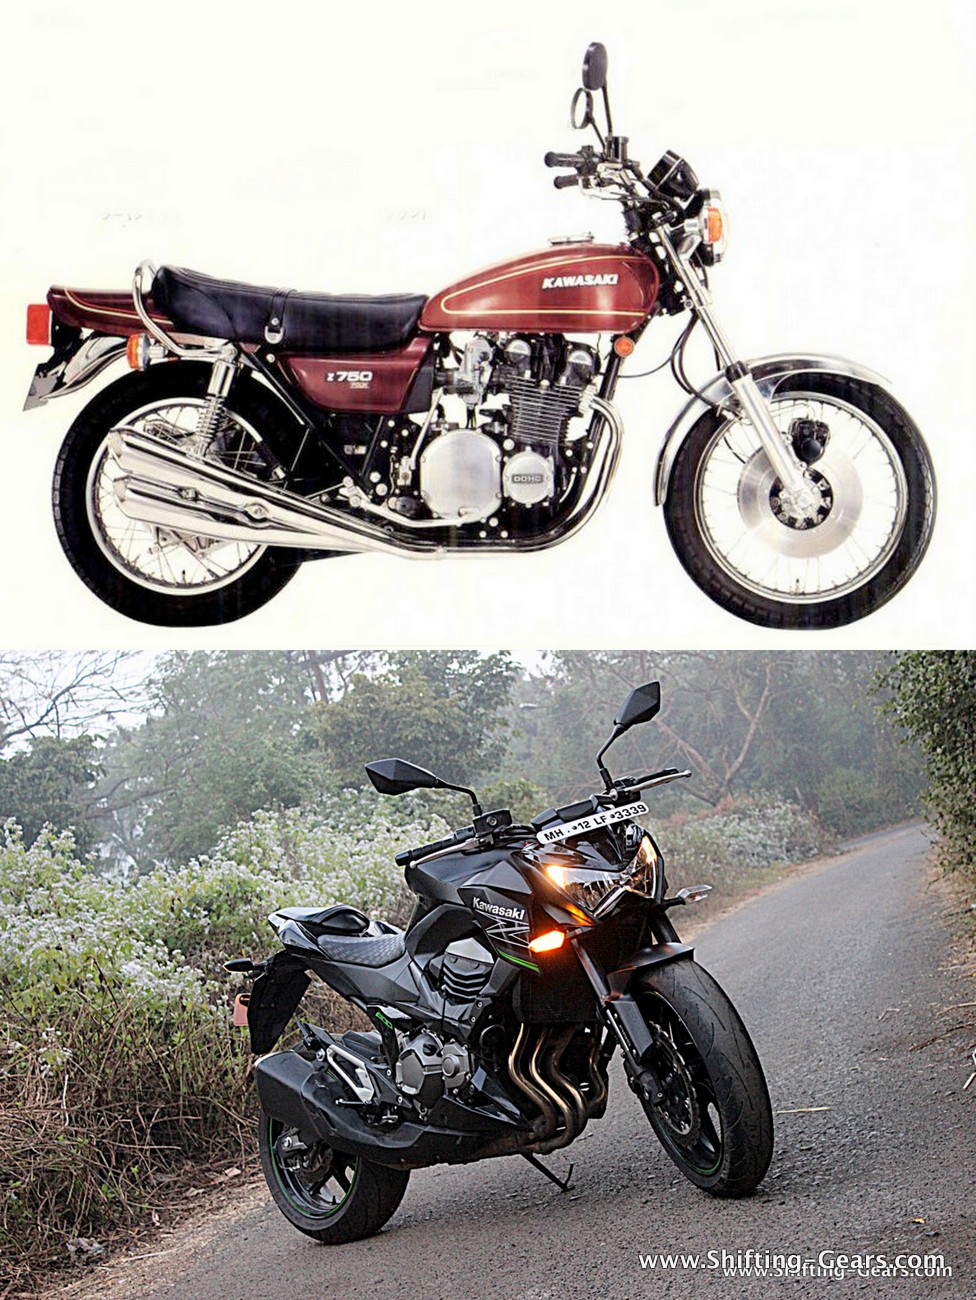 Kawasaki | Shifting-Gears